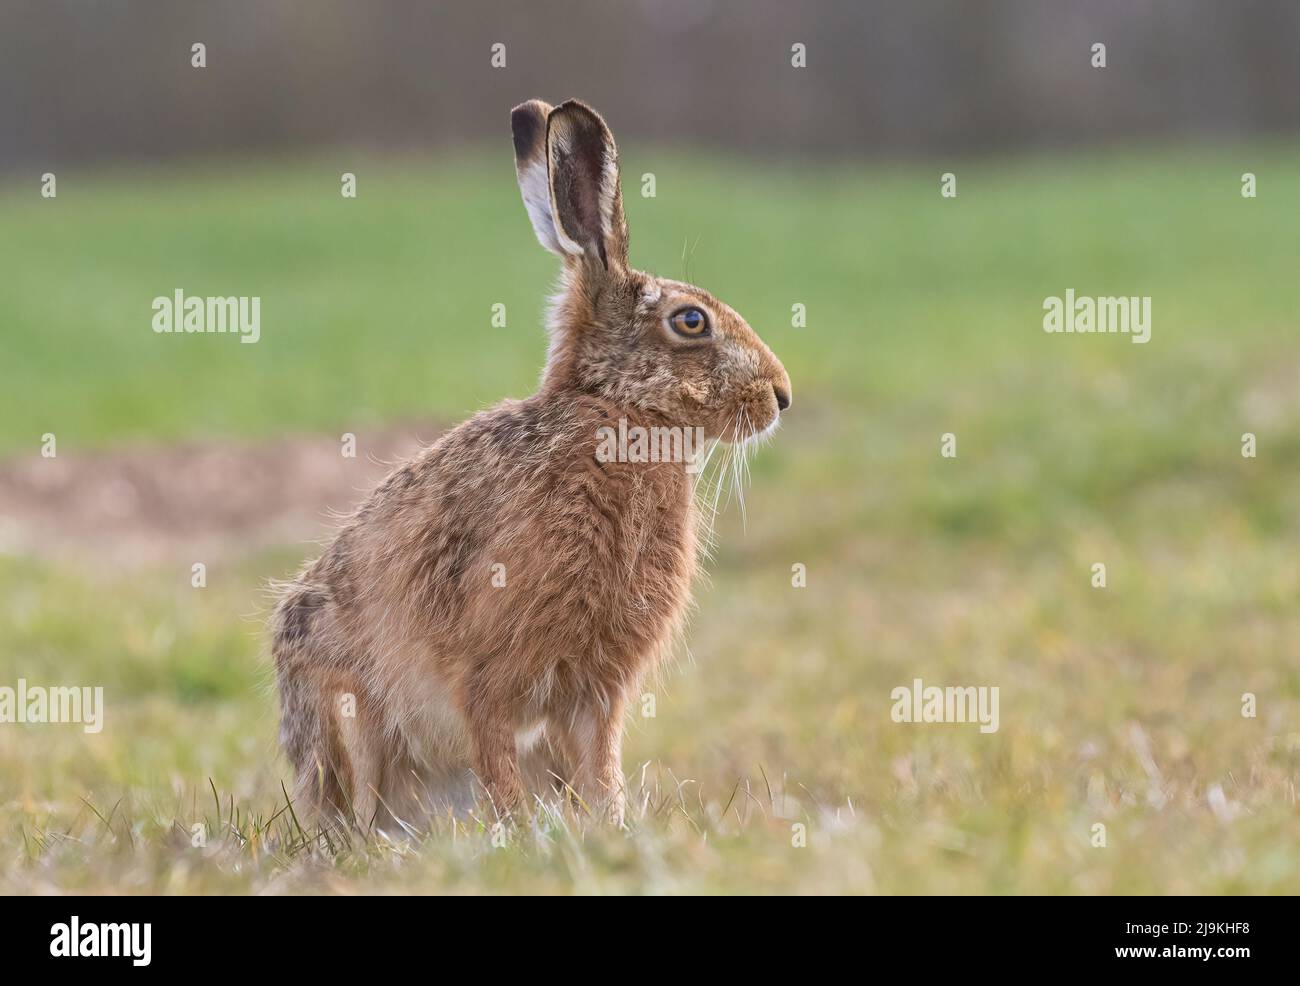 Ein brauner Hase sitzt seitlich zur Kamera und zeigt Details seines orangen Auges, großer Ohren und zotteligem braunen Fell - Suffolk, Großbritannien Stockfoto